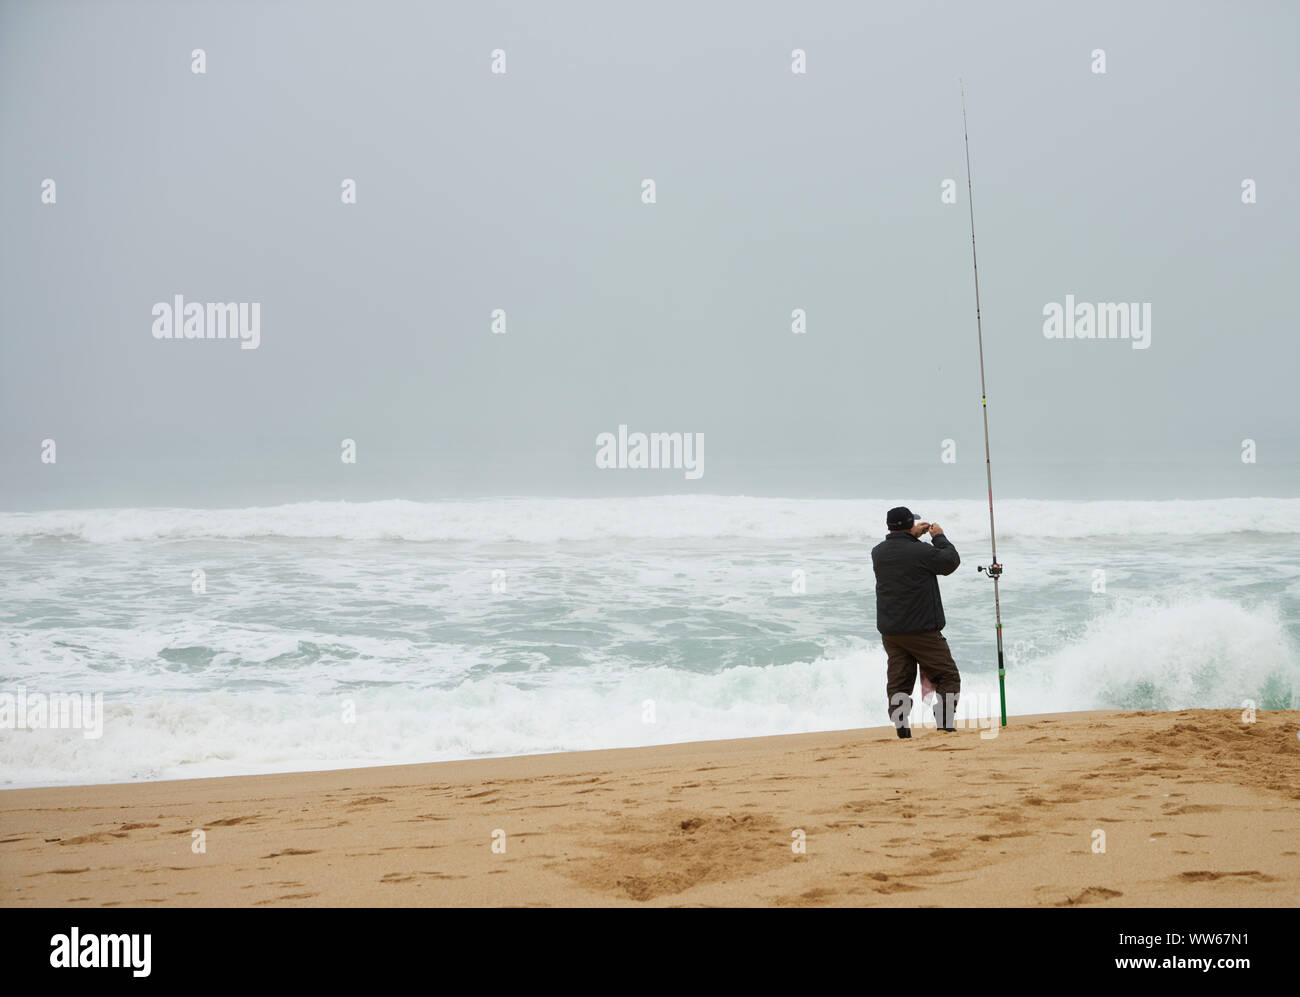 L'uomo con la canna da pesca sulla spiaggia, il mare, le onde, schiuma, wind surf, Foto Stock